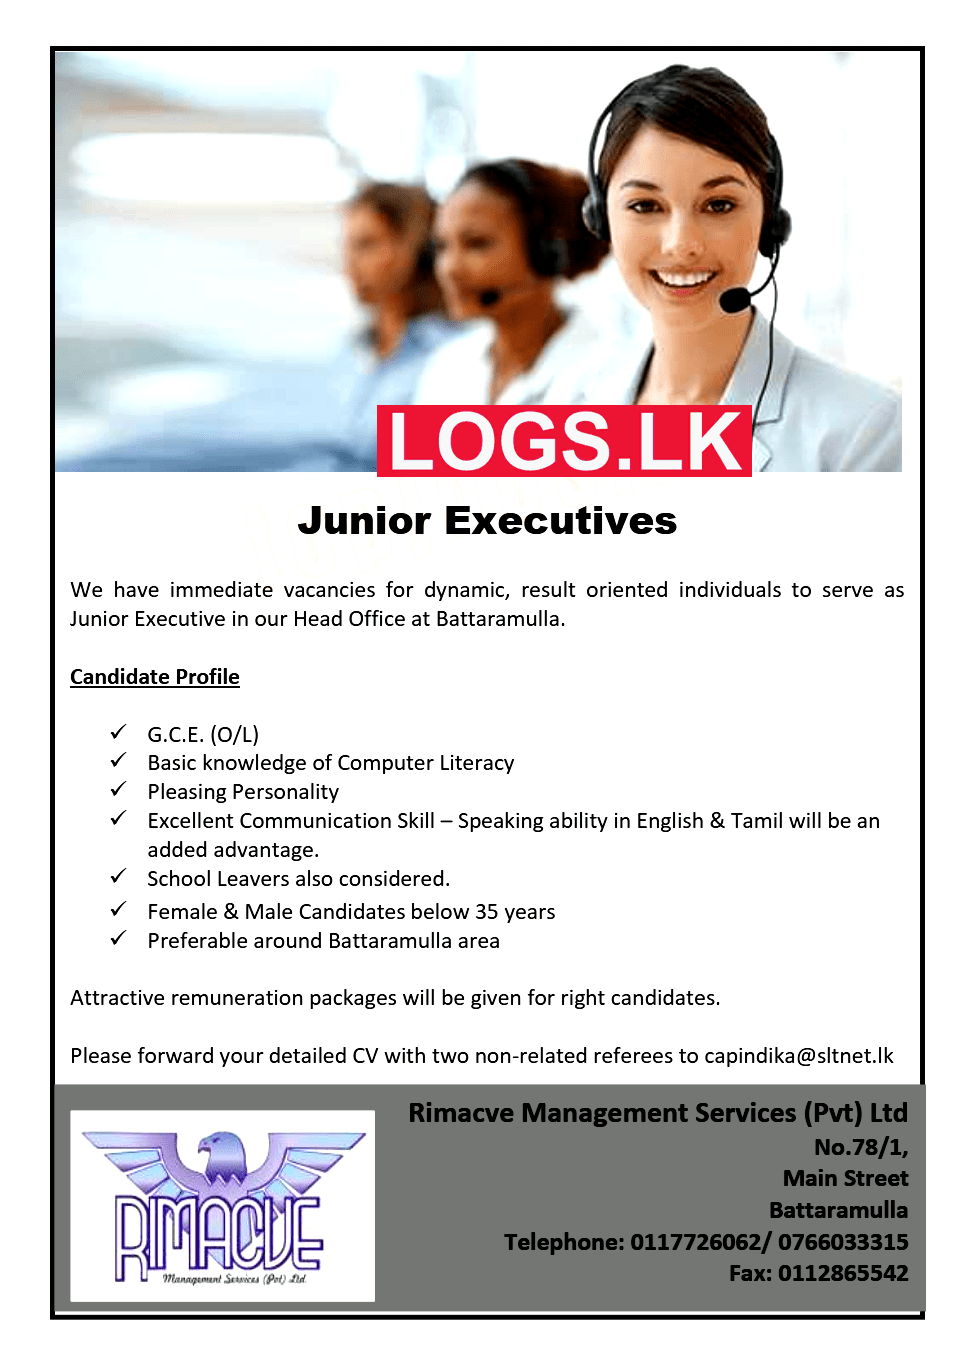 Junior Executive Job Vacancy at Rimacve Management Services Job Vacancies